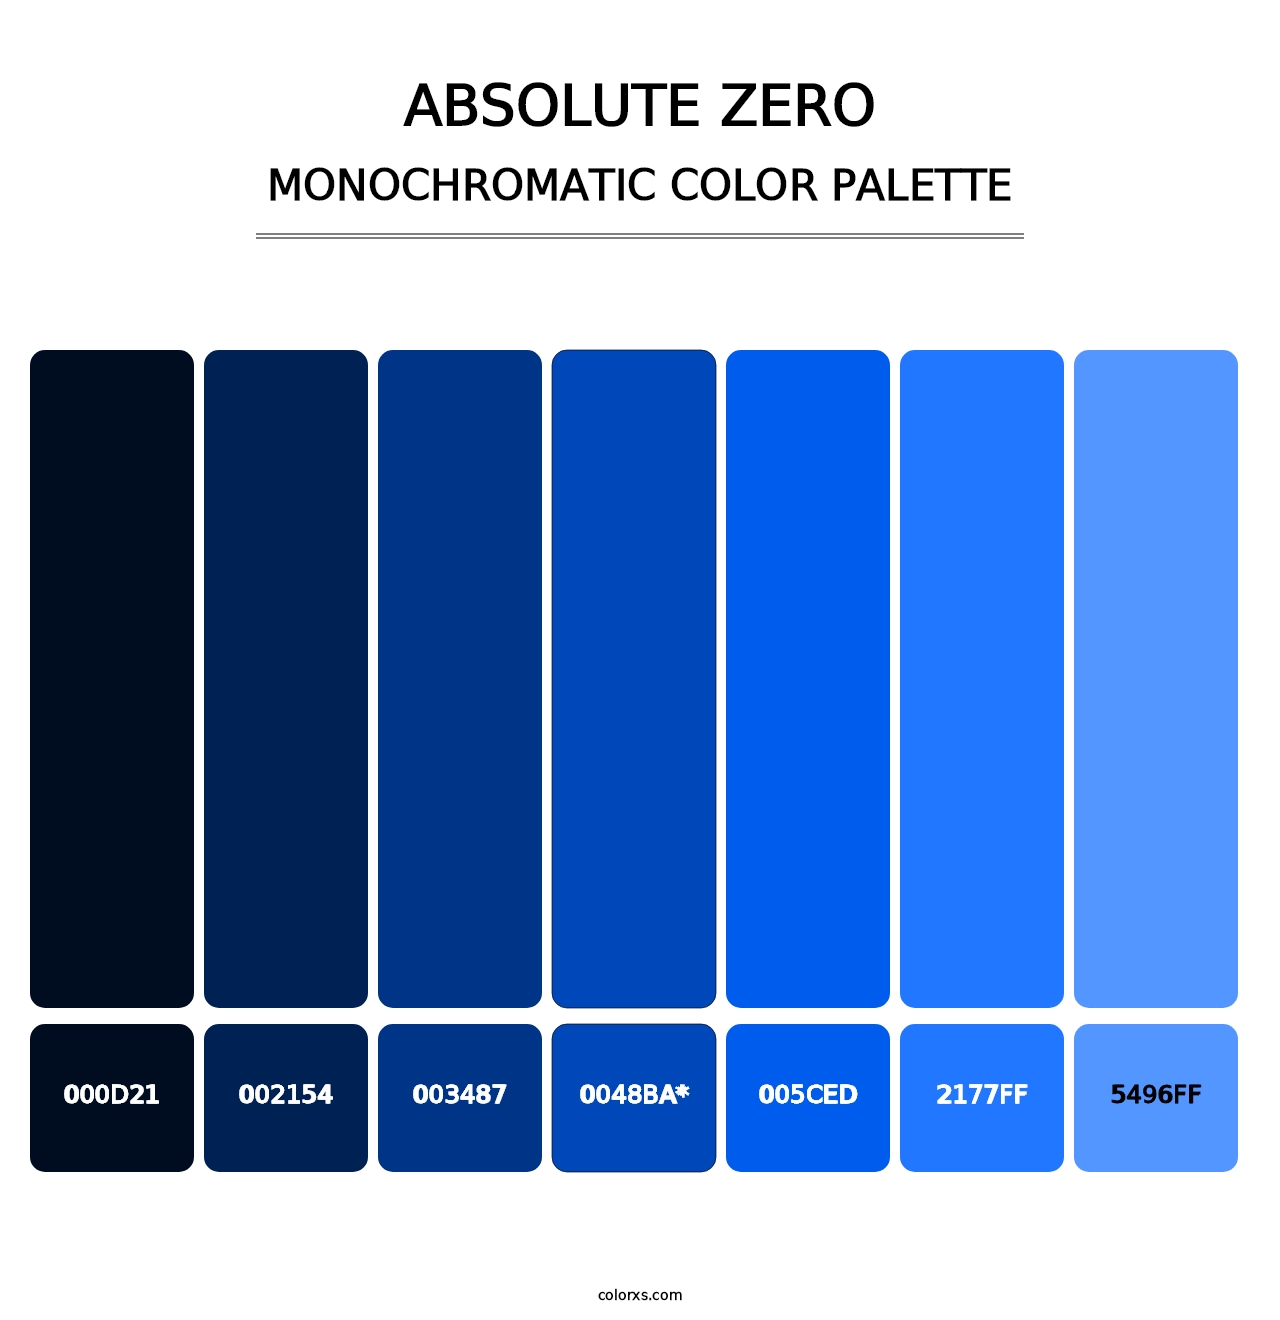 Absolute Zero - Monochromatic Color Palette